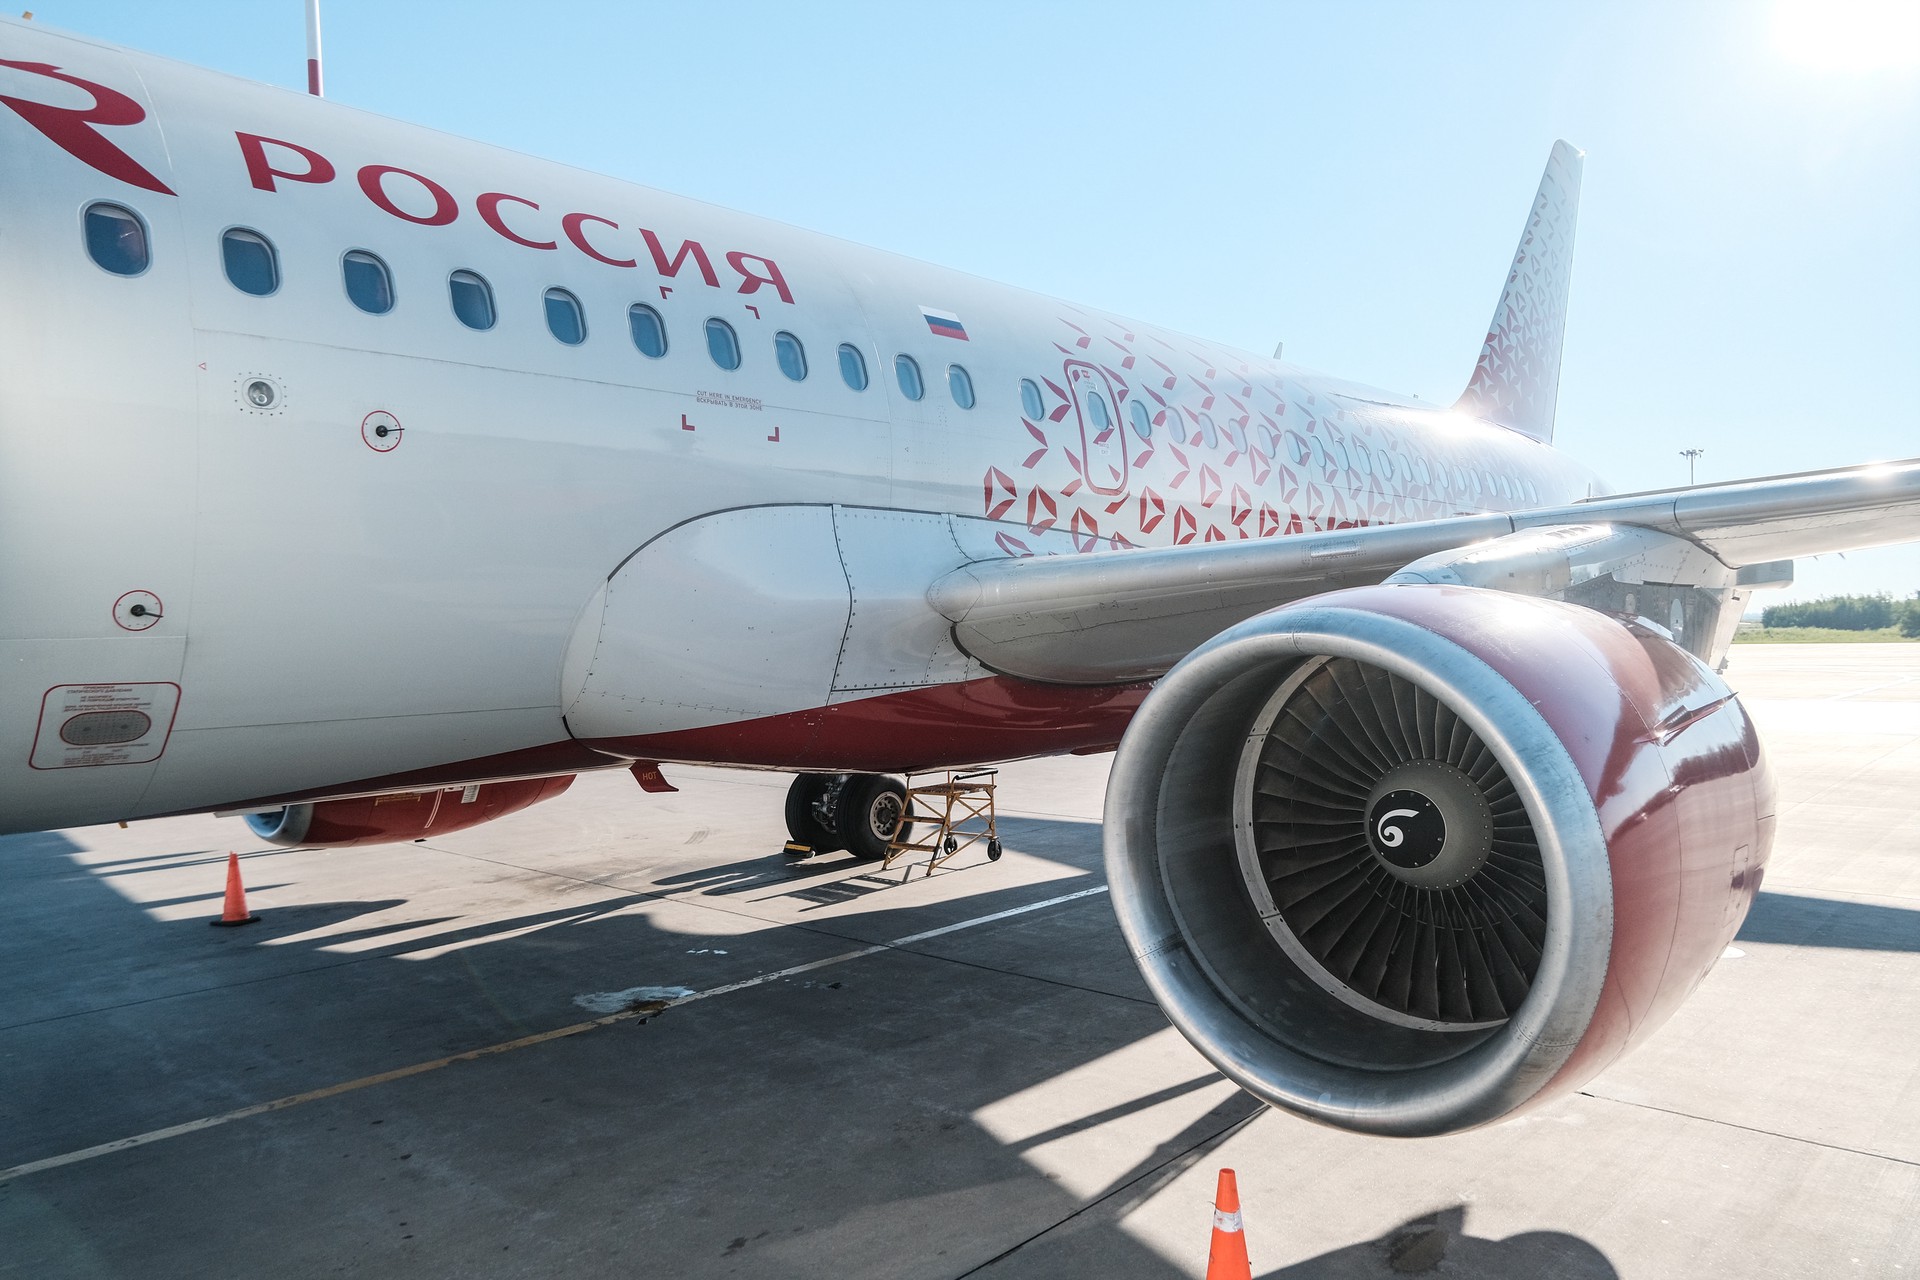 Самолет «России» совершил аварийную посадку в Минводах из-за разгерметизаци кабины пилотов